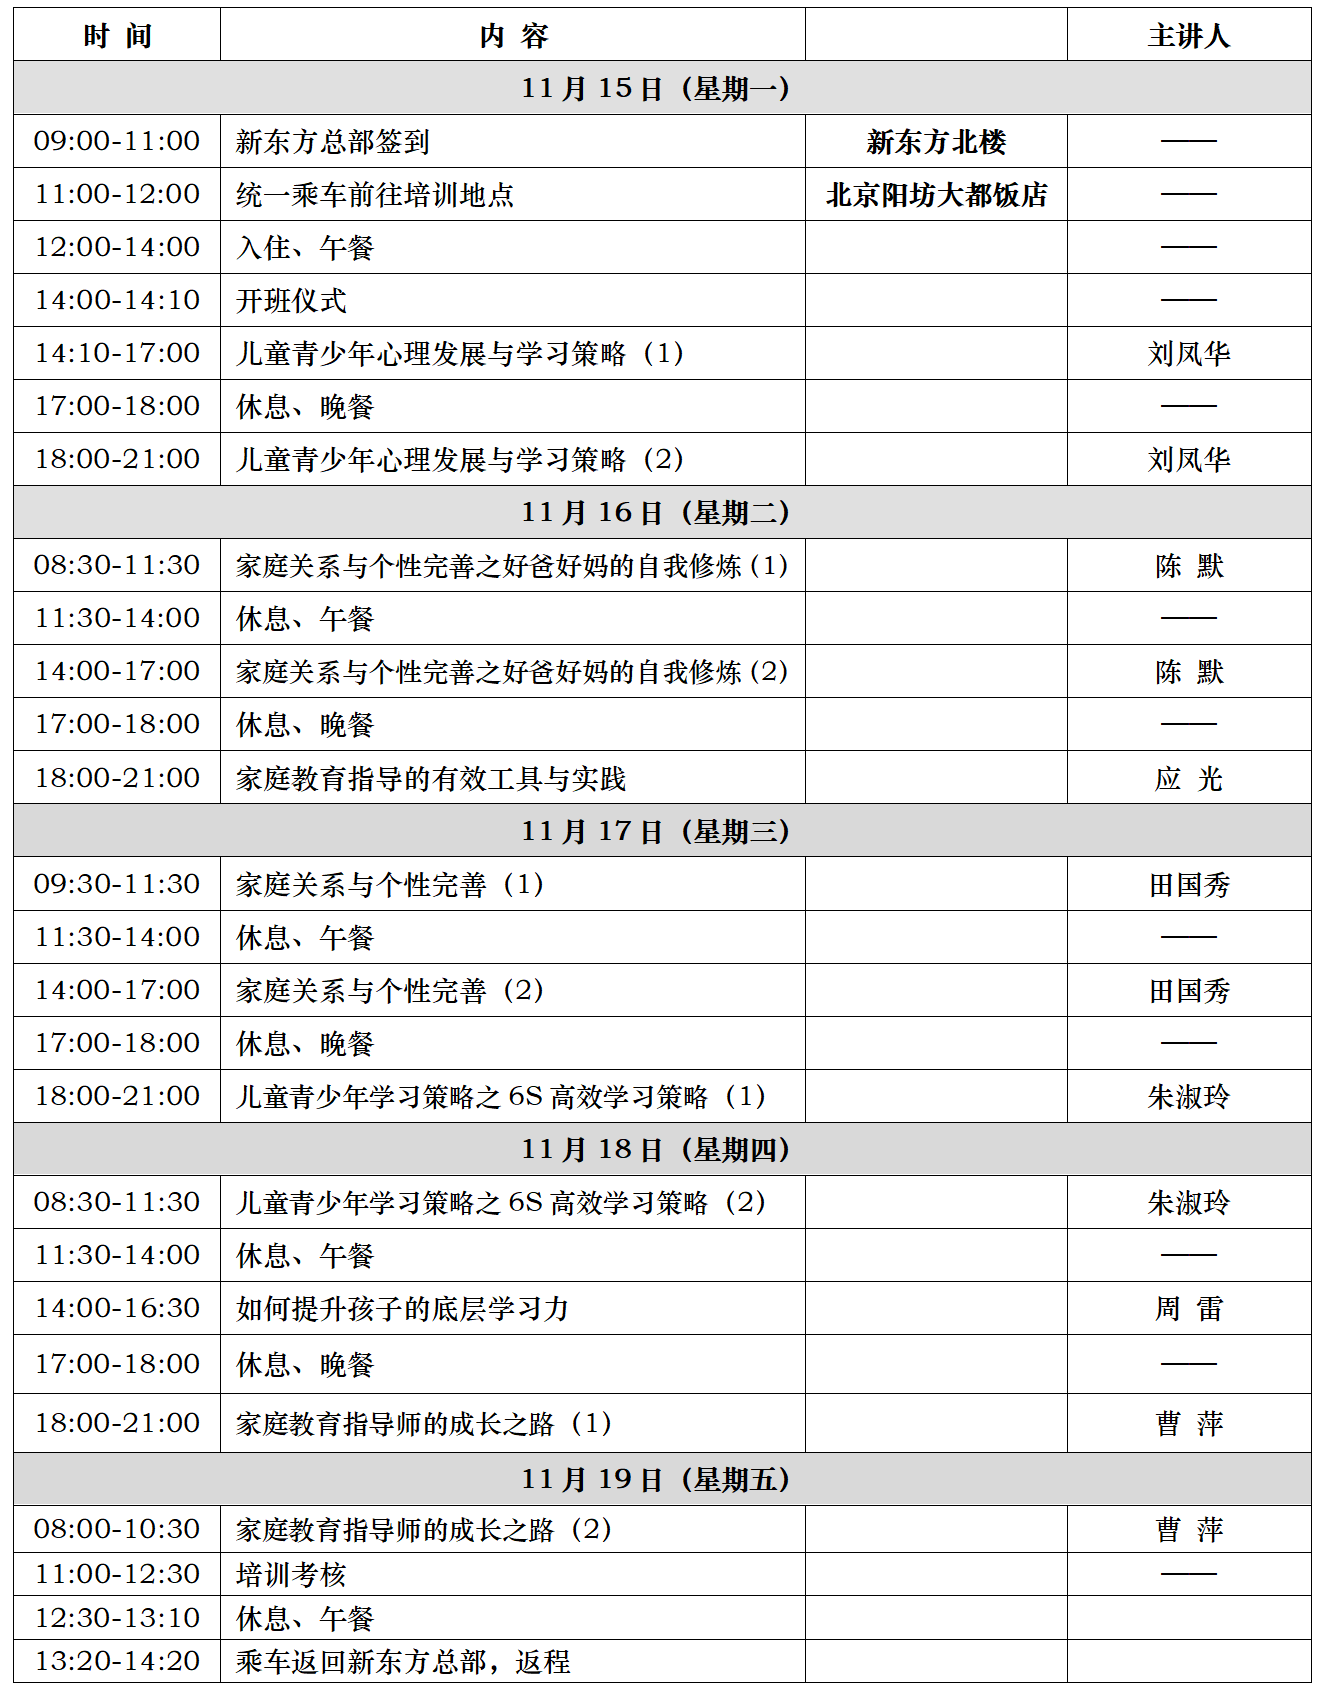 附件1：新东方第122期家庭教育指导师培训议程(11.15-11.19)_02.png